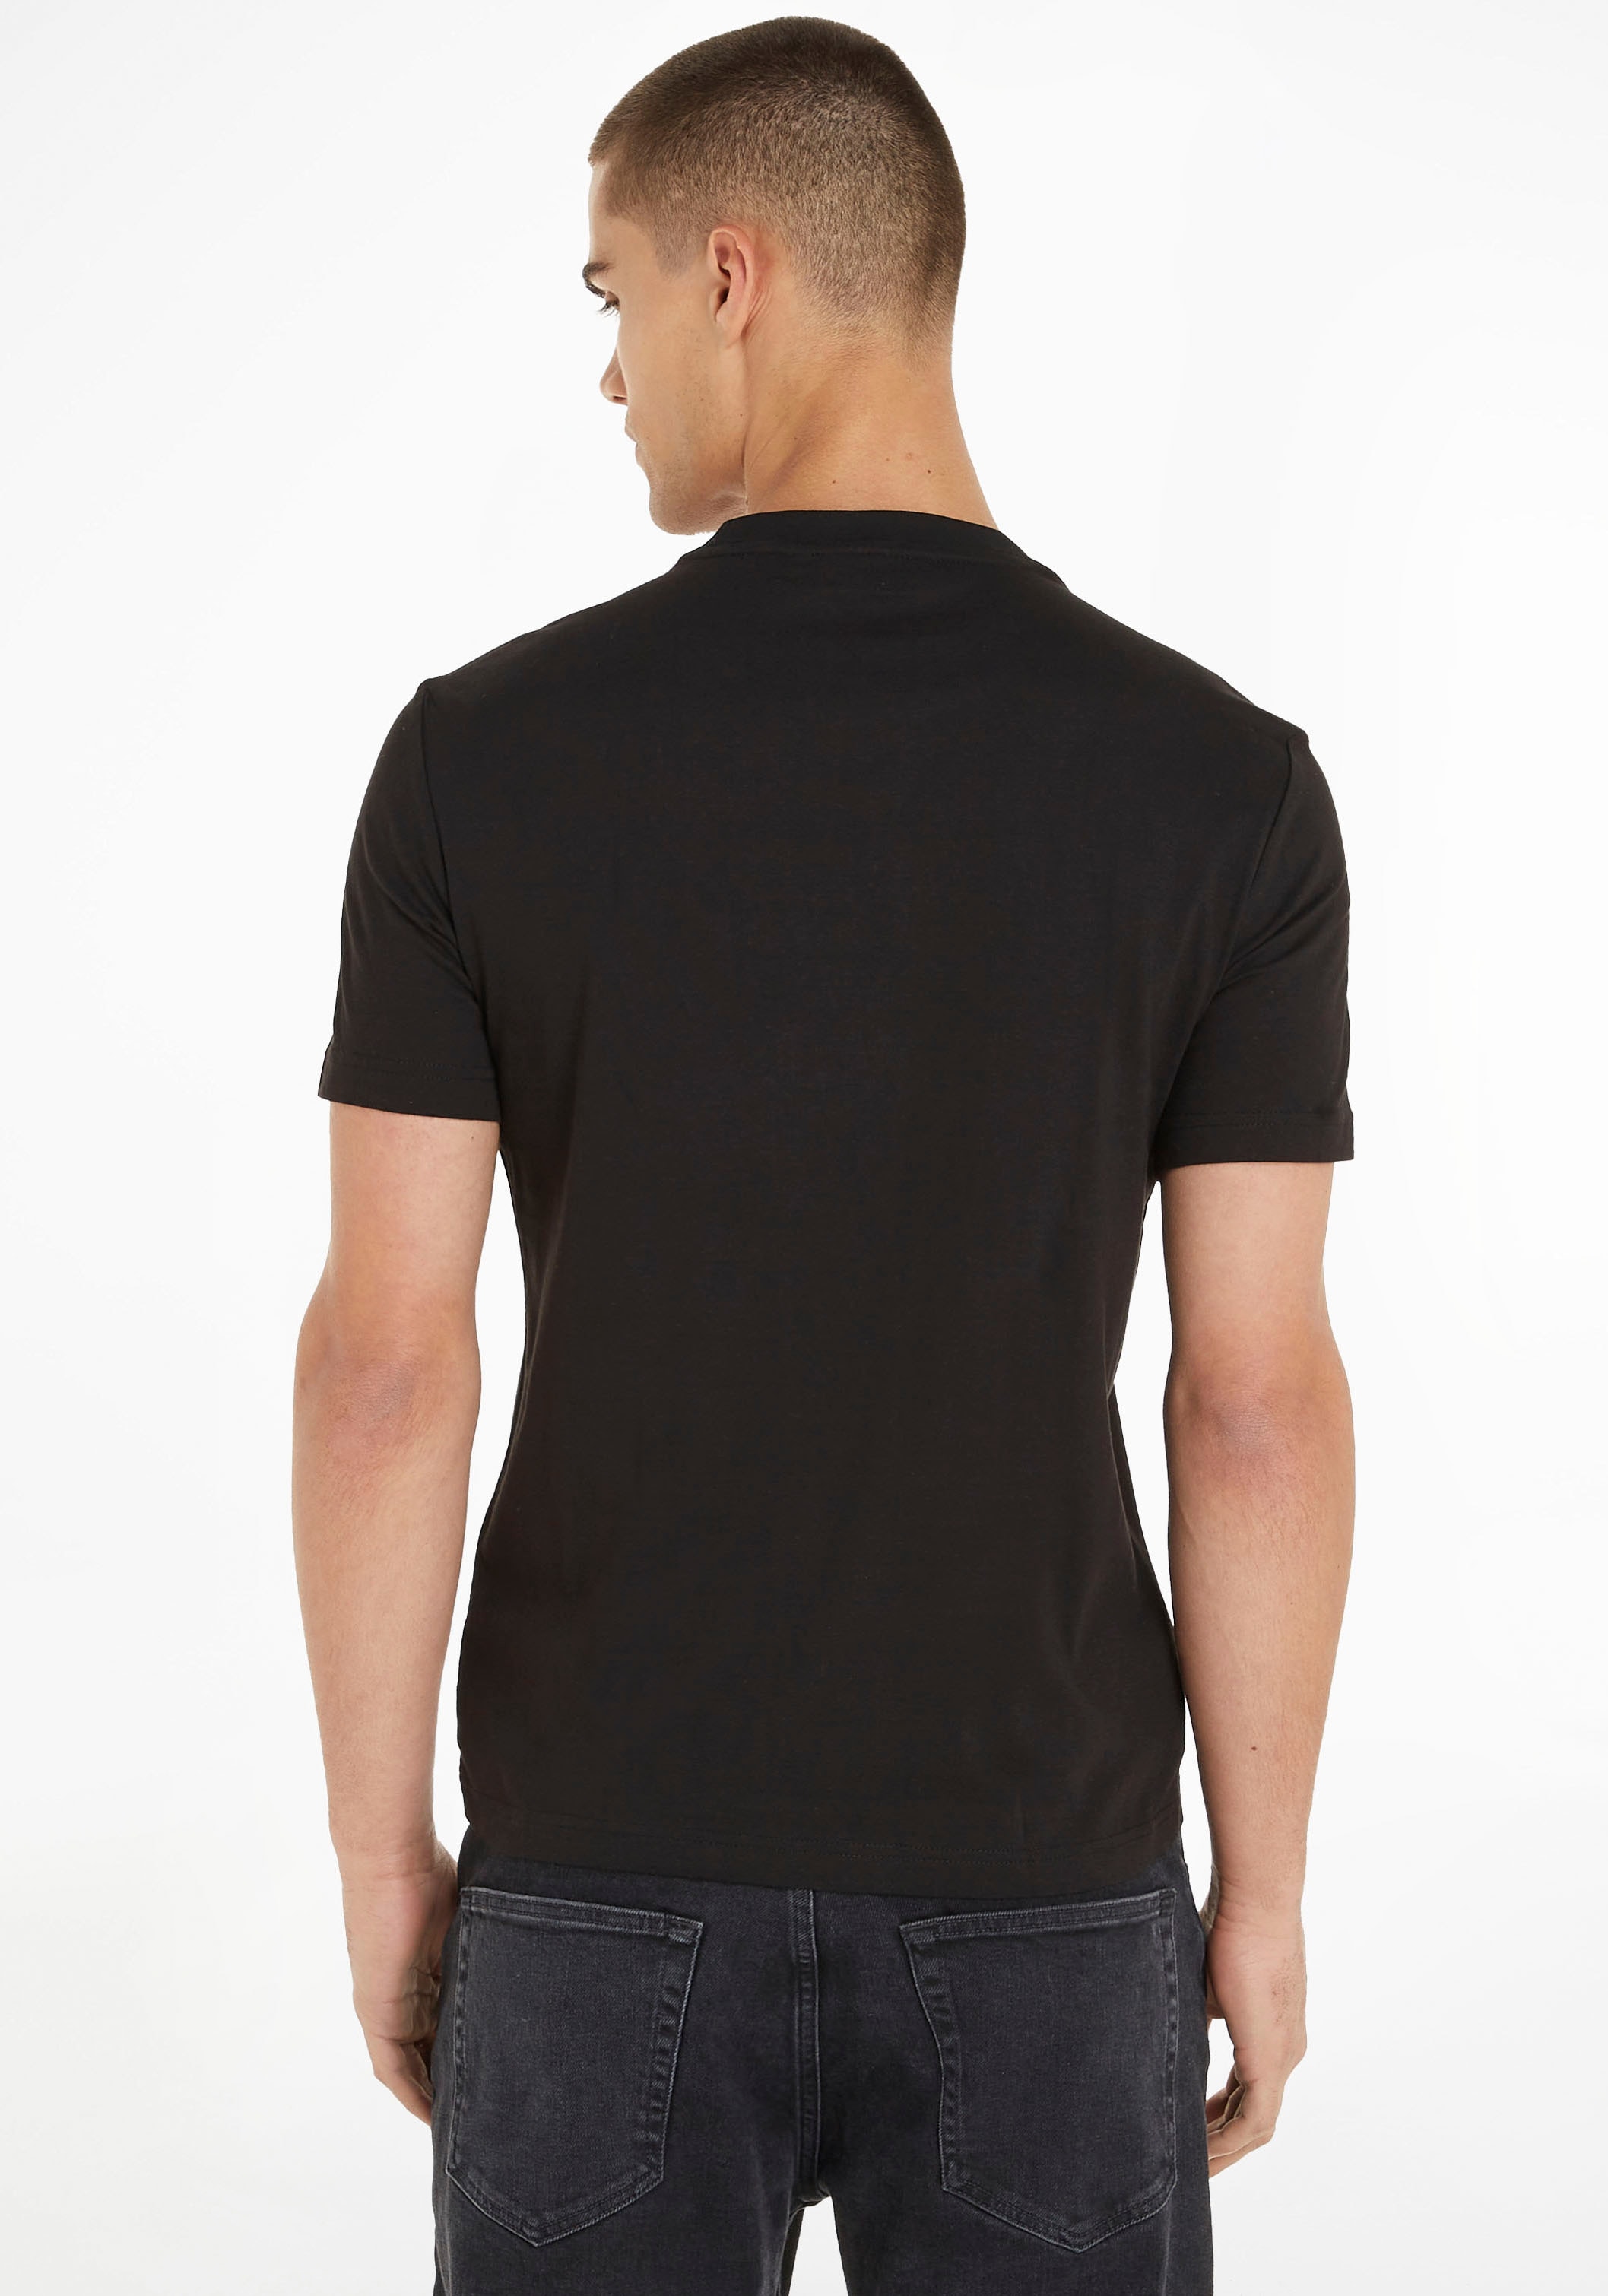 Brust Calvin Klein Logo der online Kurzarmshirt, auf OTTO Klein Calvin kaufen bei mit